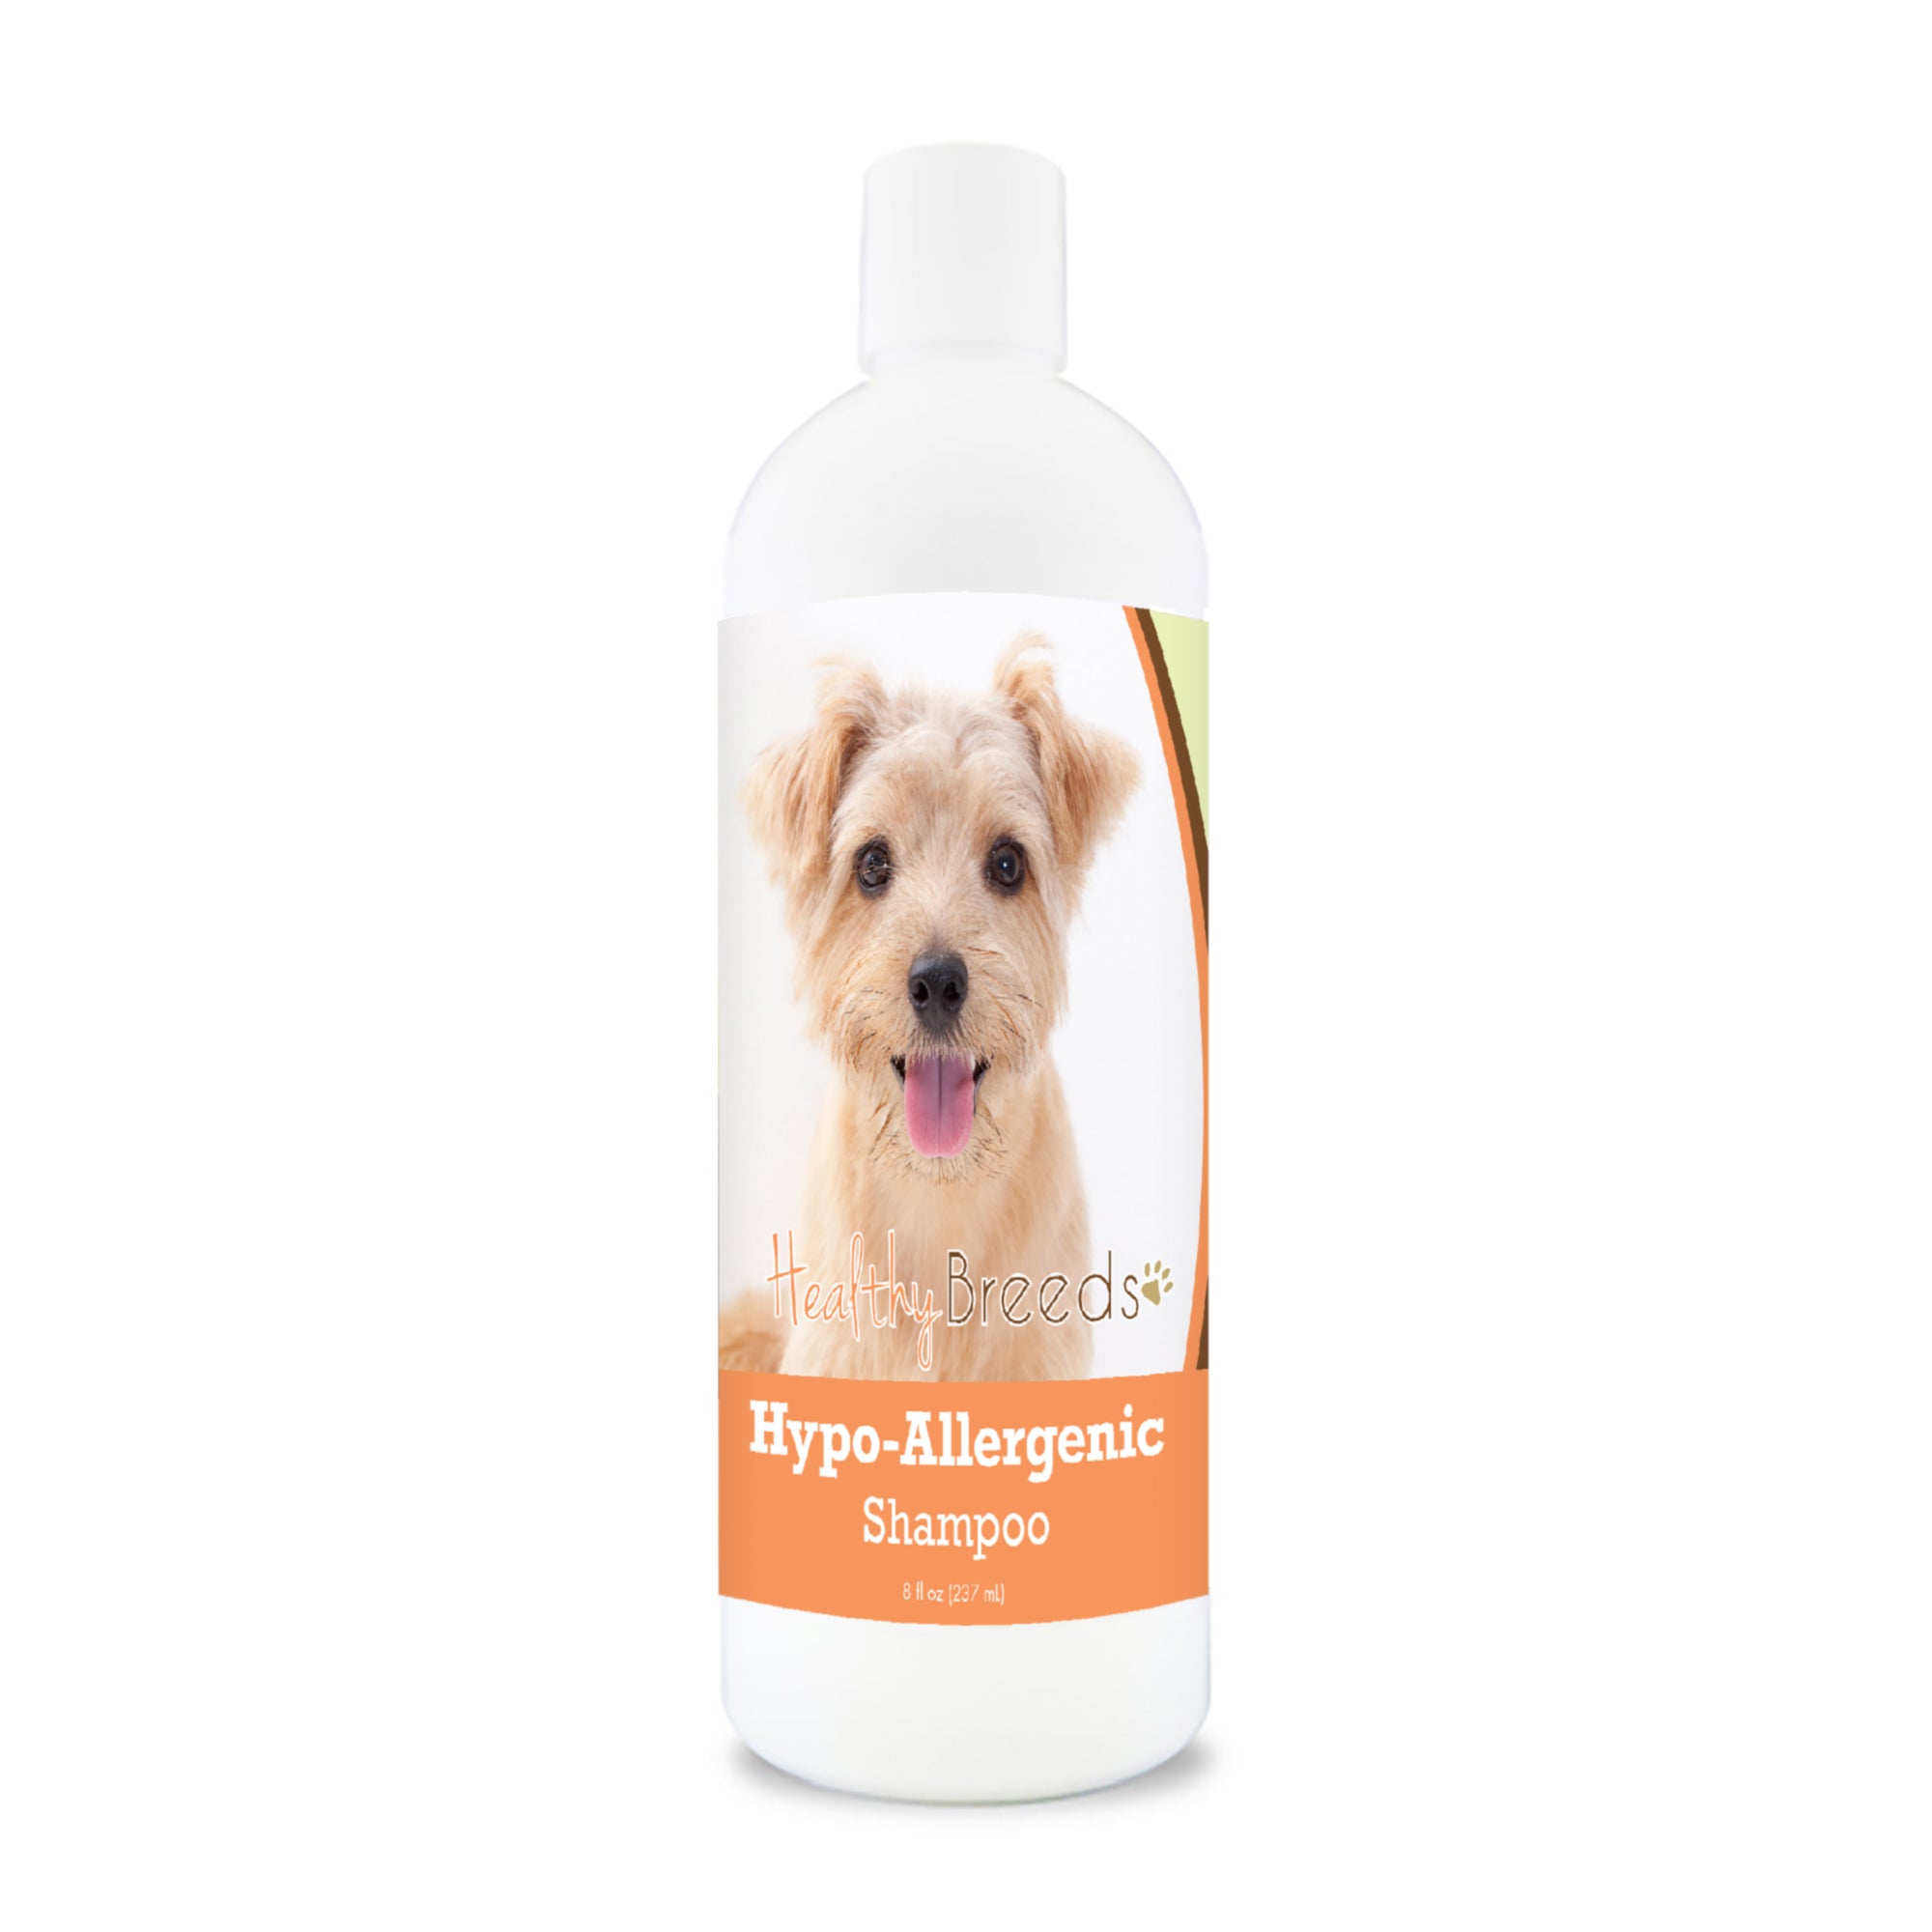 Norfolk Terrier Hypo-Allergenic Shampoo 8 oz